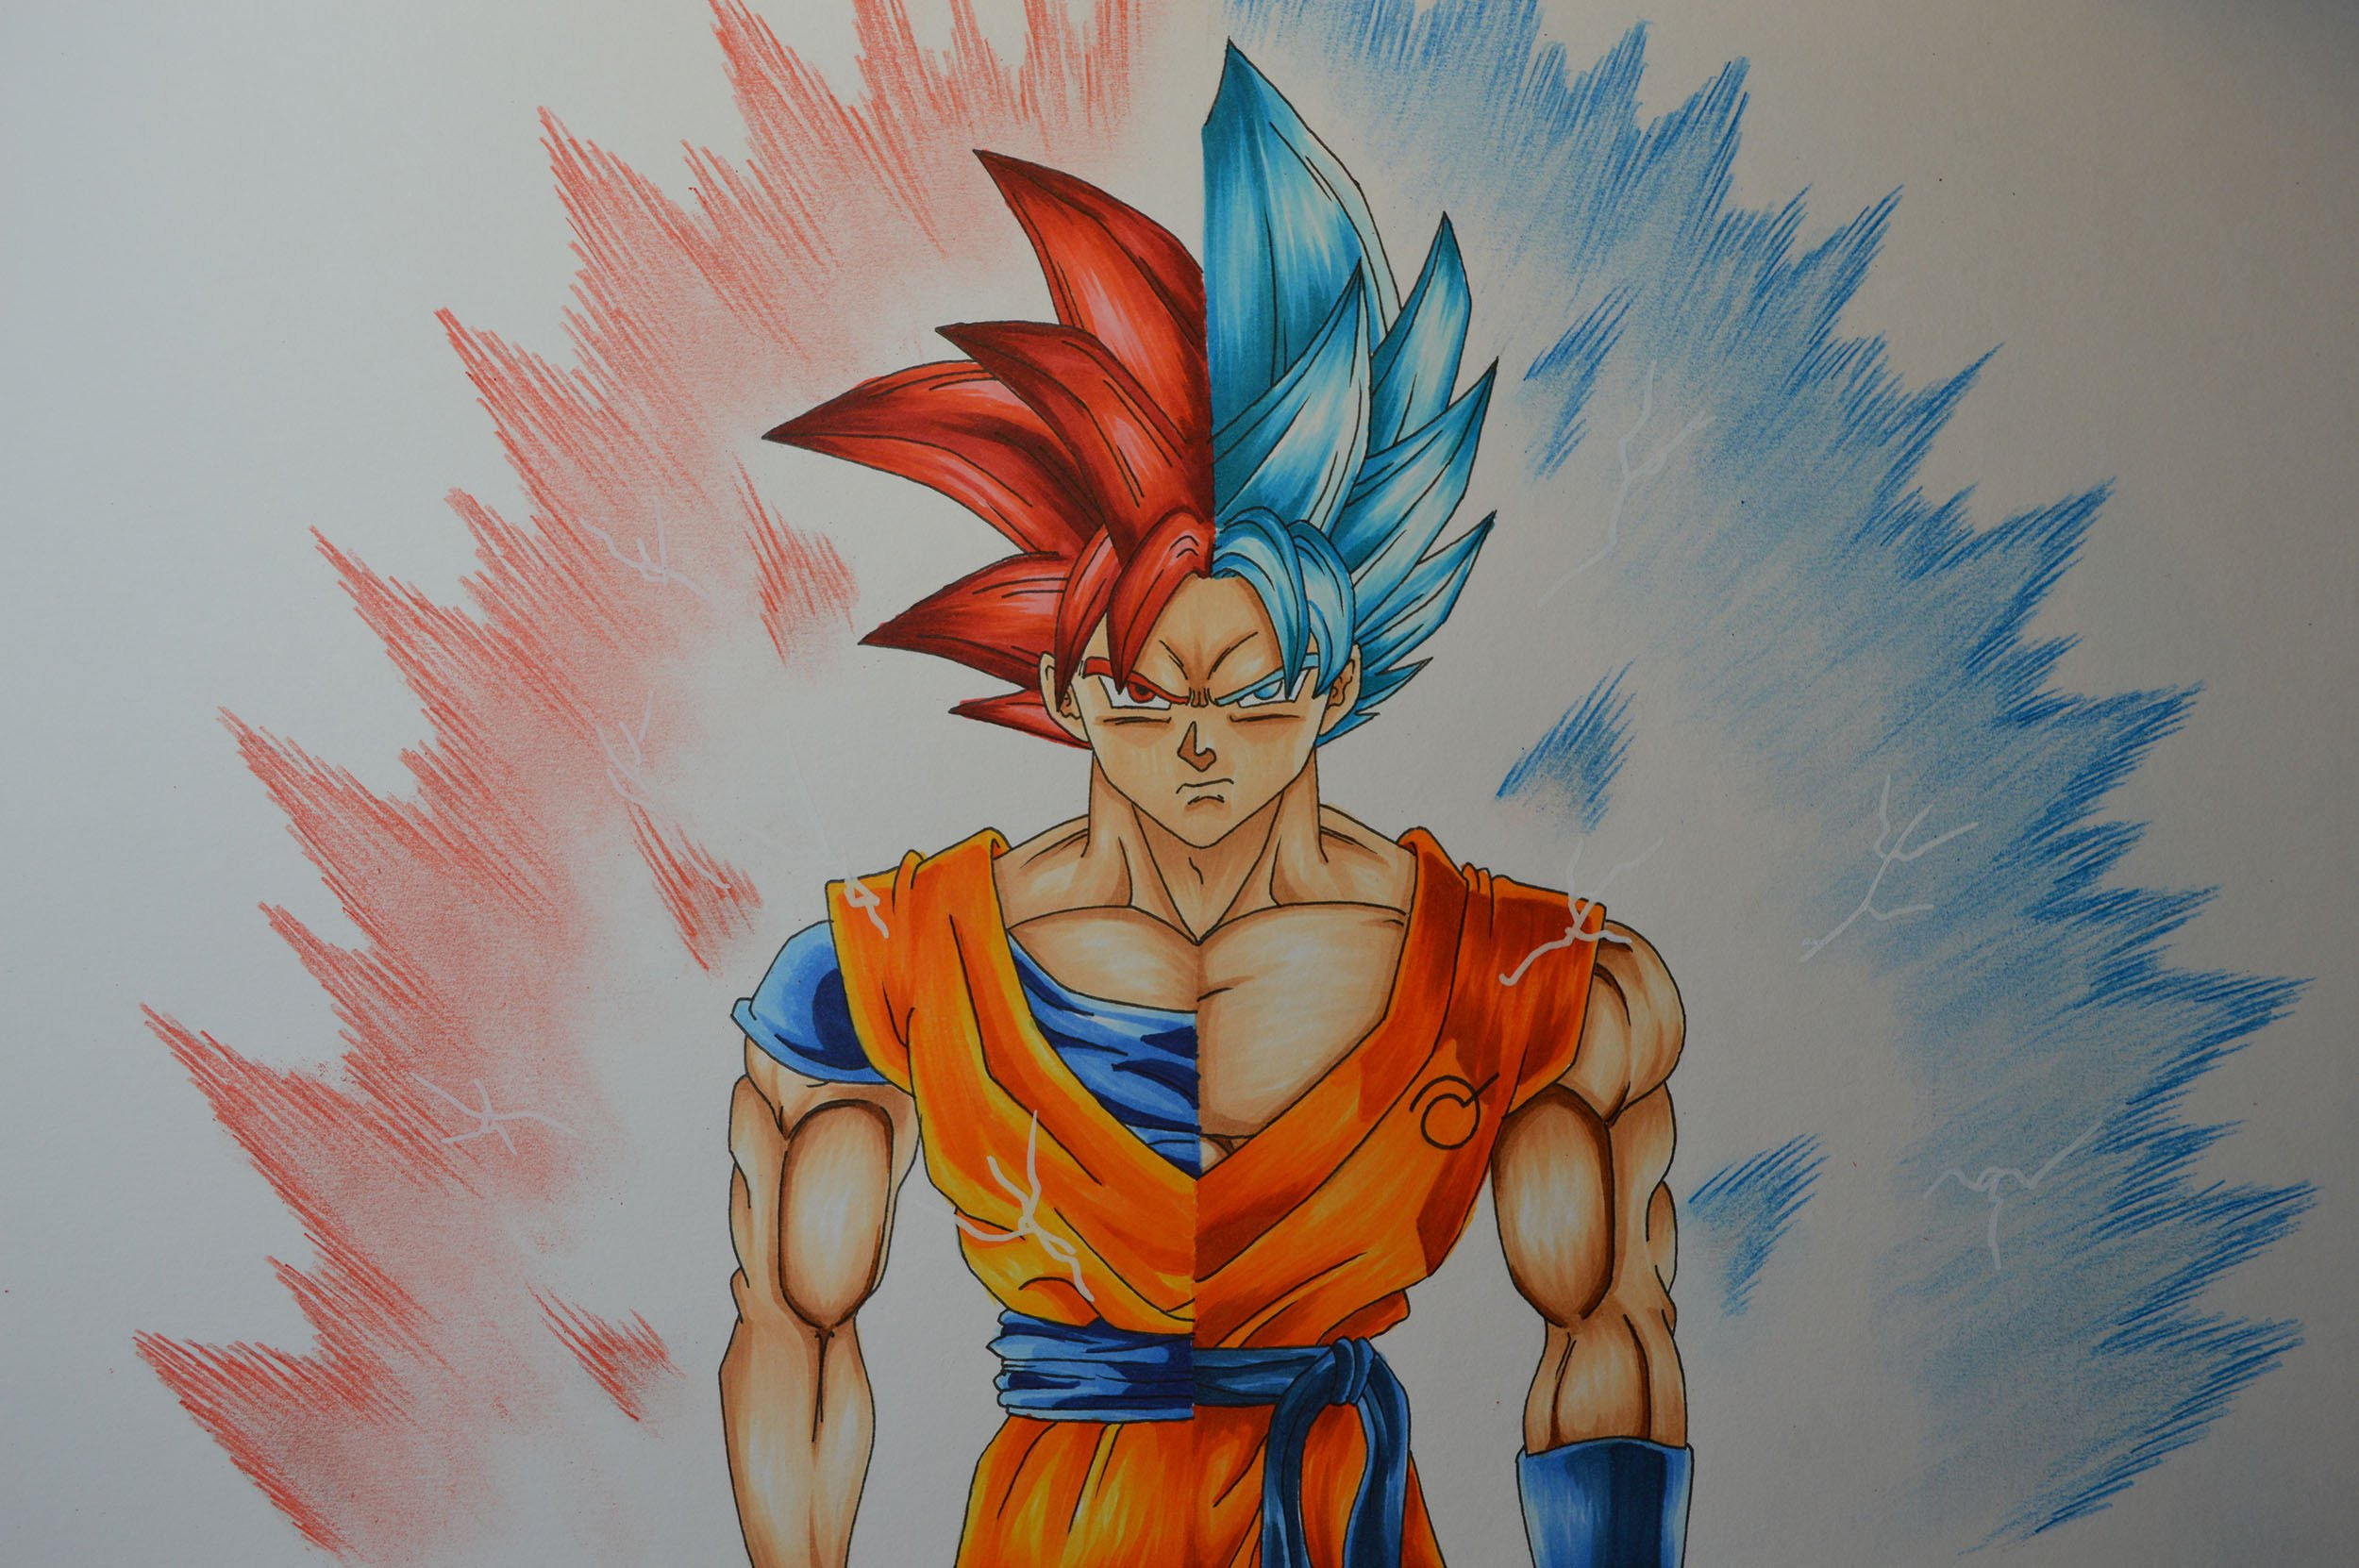  Goku  Super Saiyan 2  Drawing  at PaintingValley com 